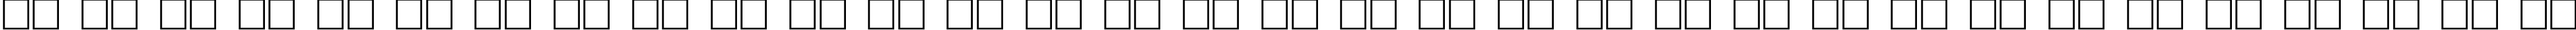 Пример написания русского алфавита шрифтом Kroeburn Regular